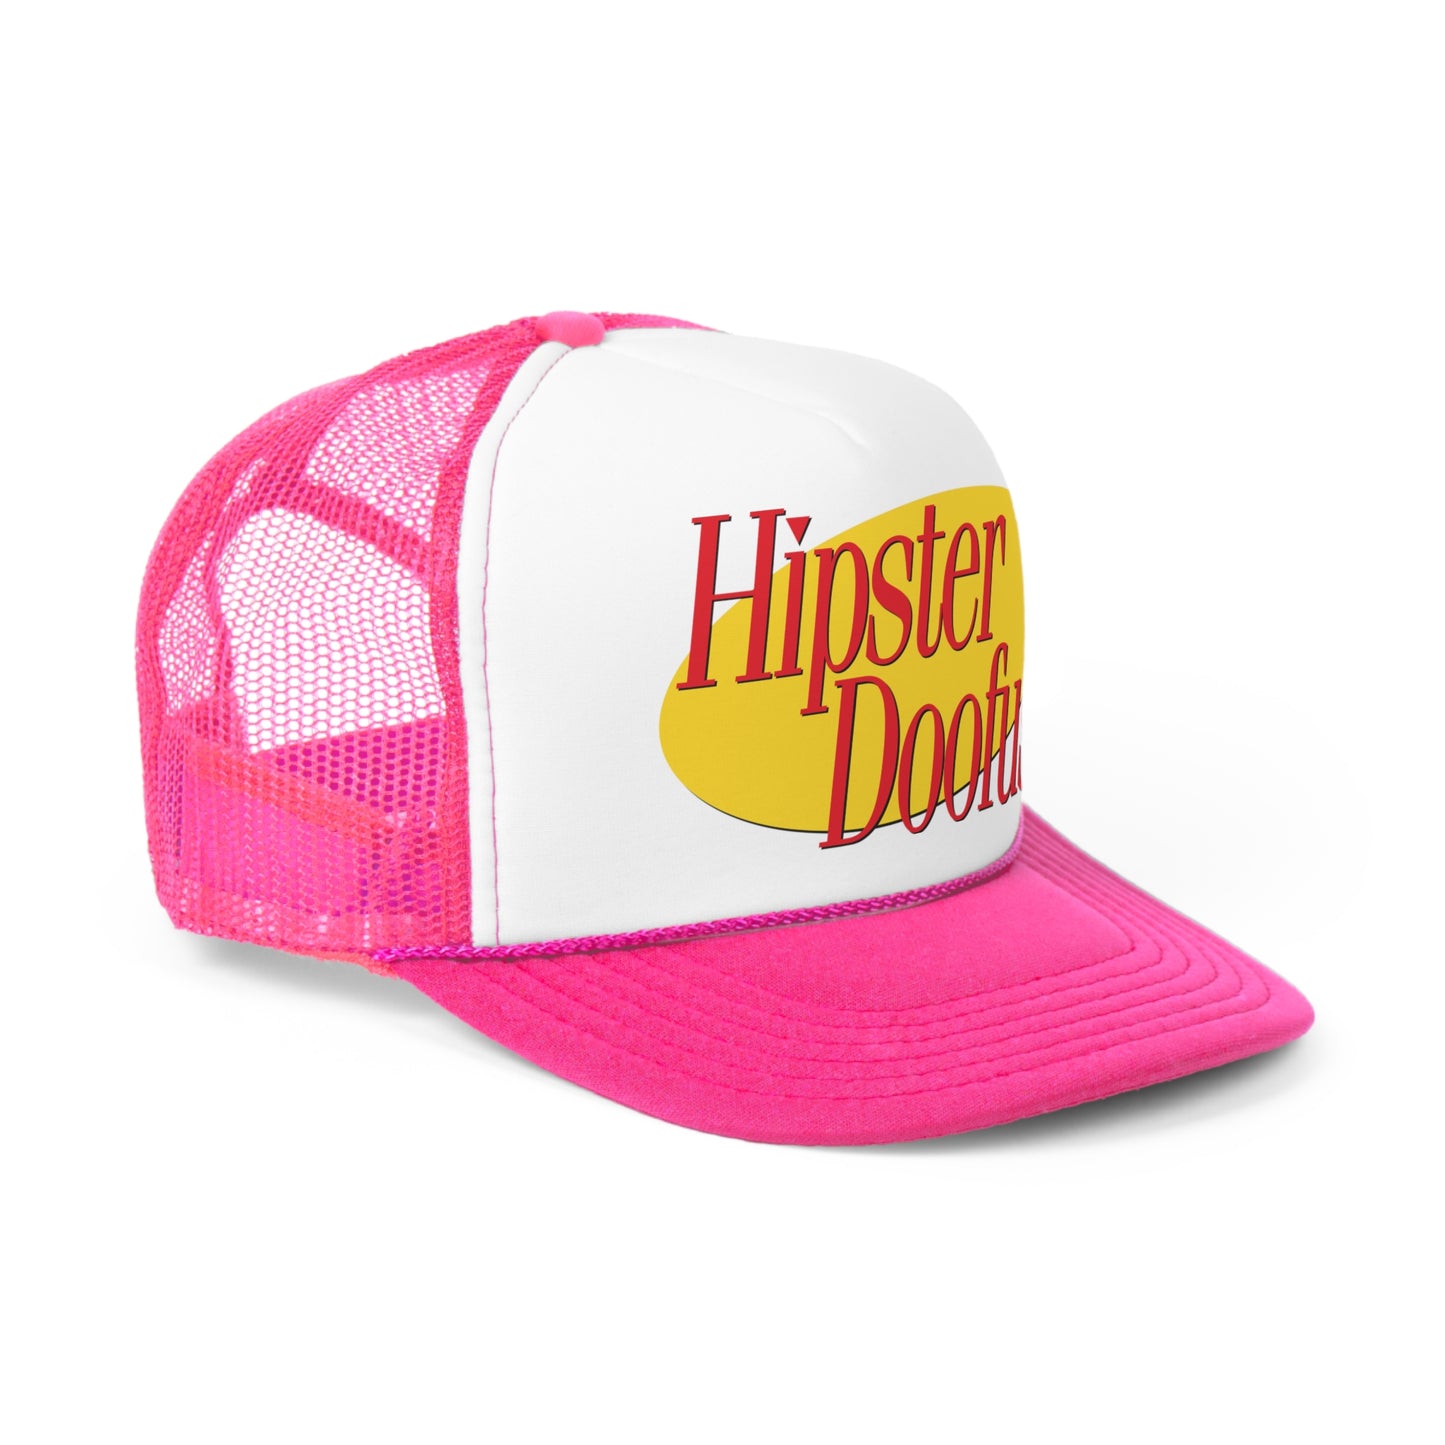 Hipster Doofus trucker hat